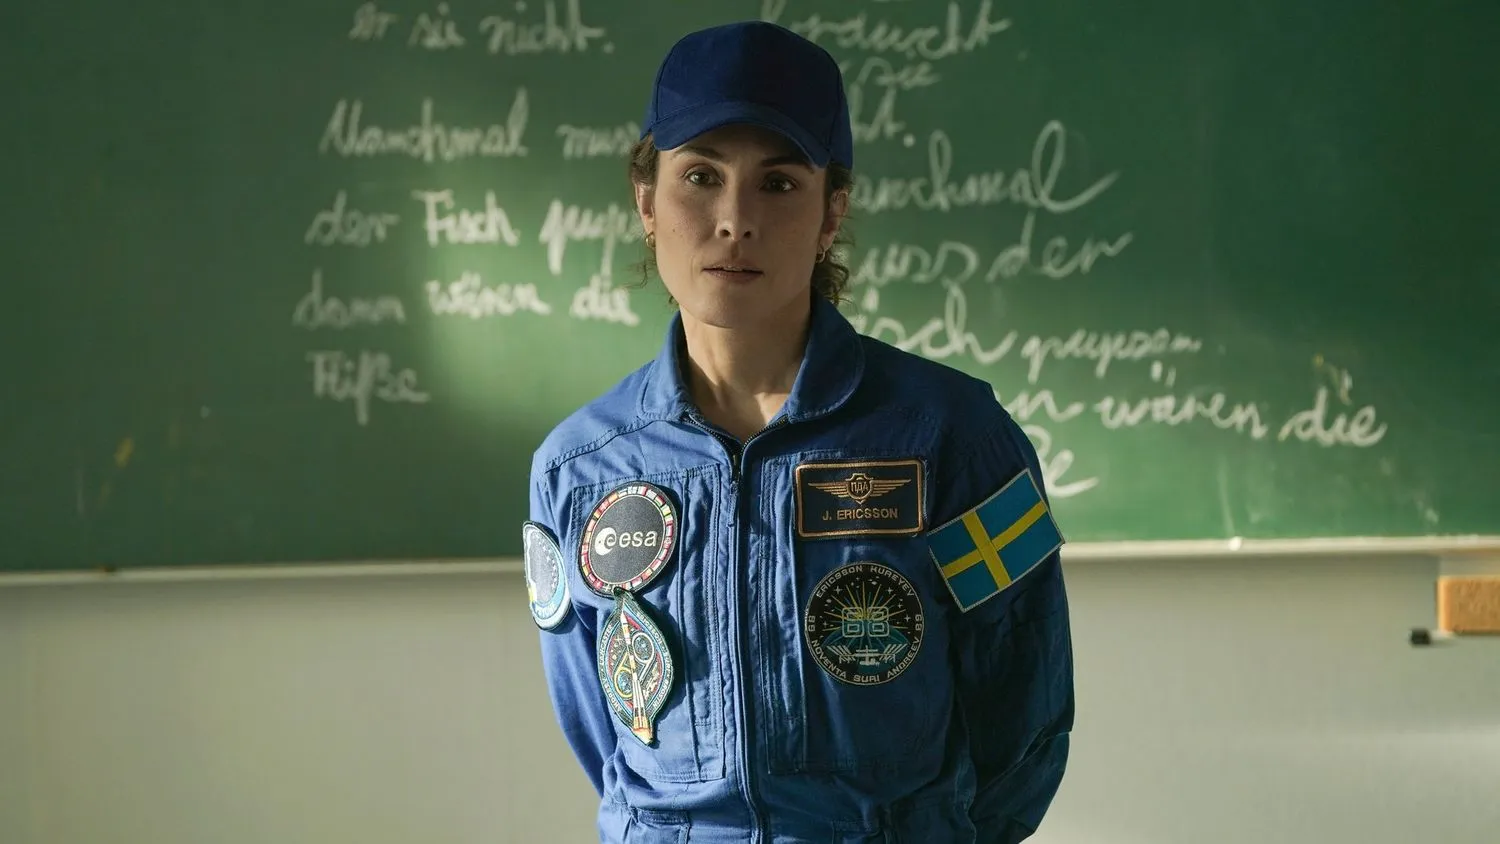 Eine Frau trägt einen blauen Astronautenoverall, der mit verschiedenen Aufnähern, darunter einer schwedischen Flagge, verziert ist. Außerdem trägt sie eine blaue Baseballmütze. Sie steht vor einer schwarzen Tafel, auf der mit Kreide etwas geschrieben steht.